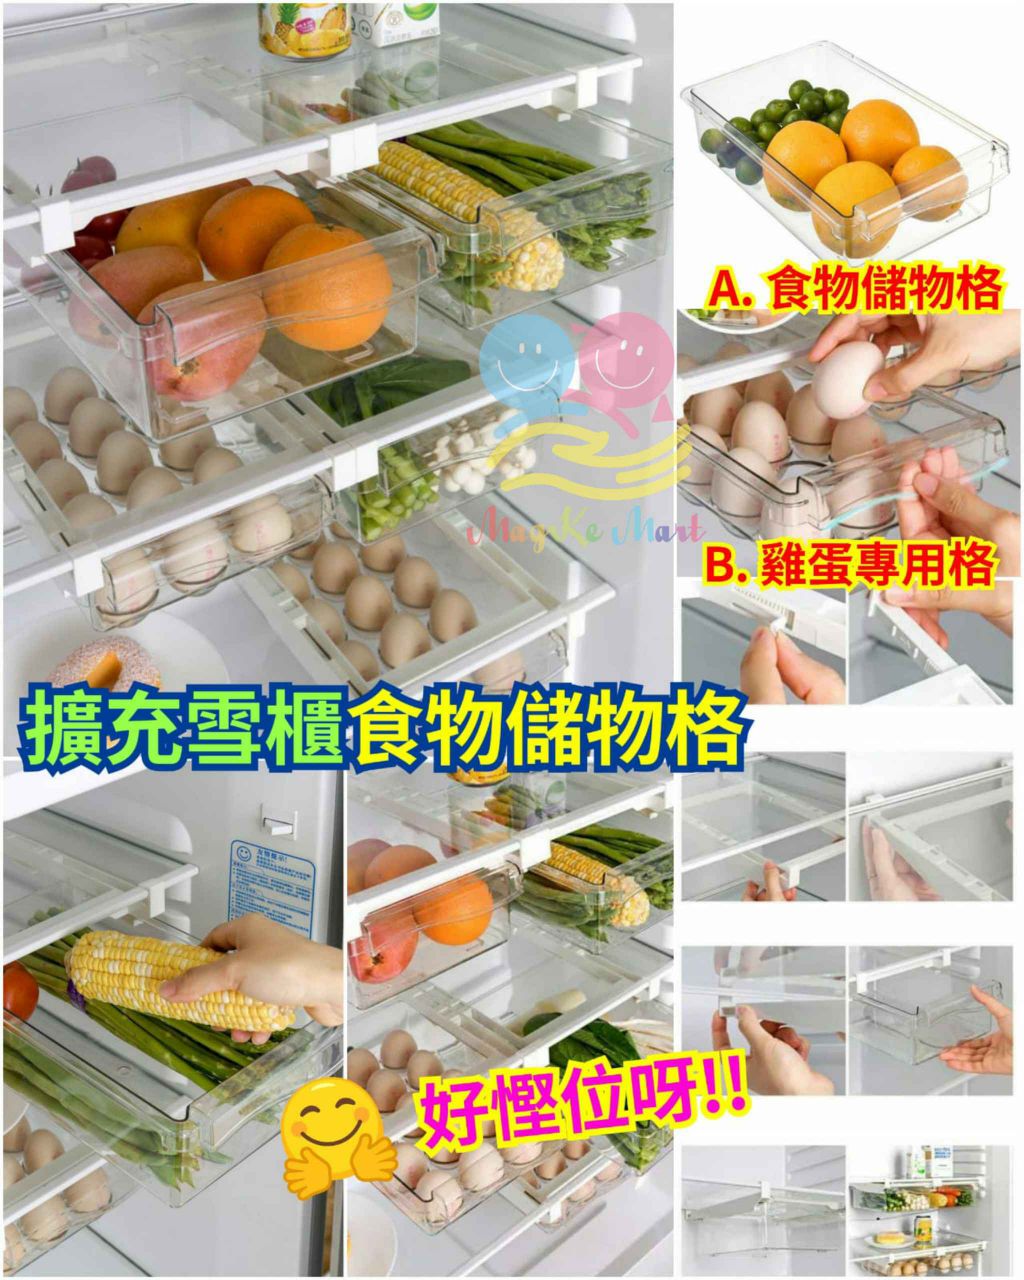 擴充雪櫃食物儲存格 (B) 雞蛋專用格